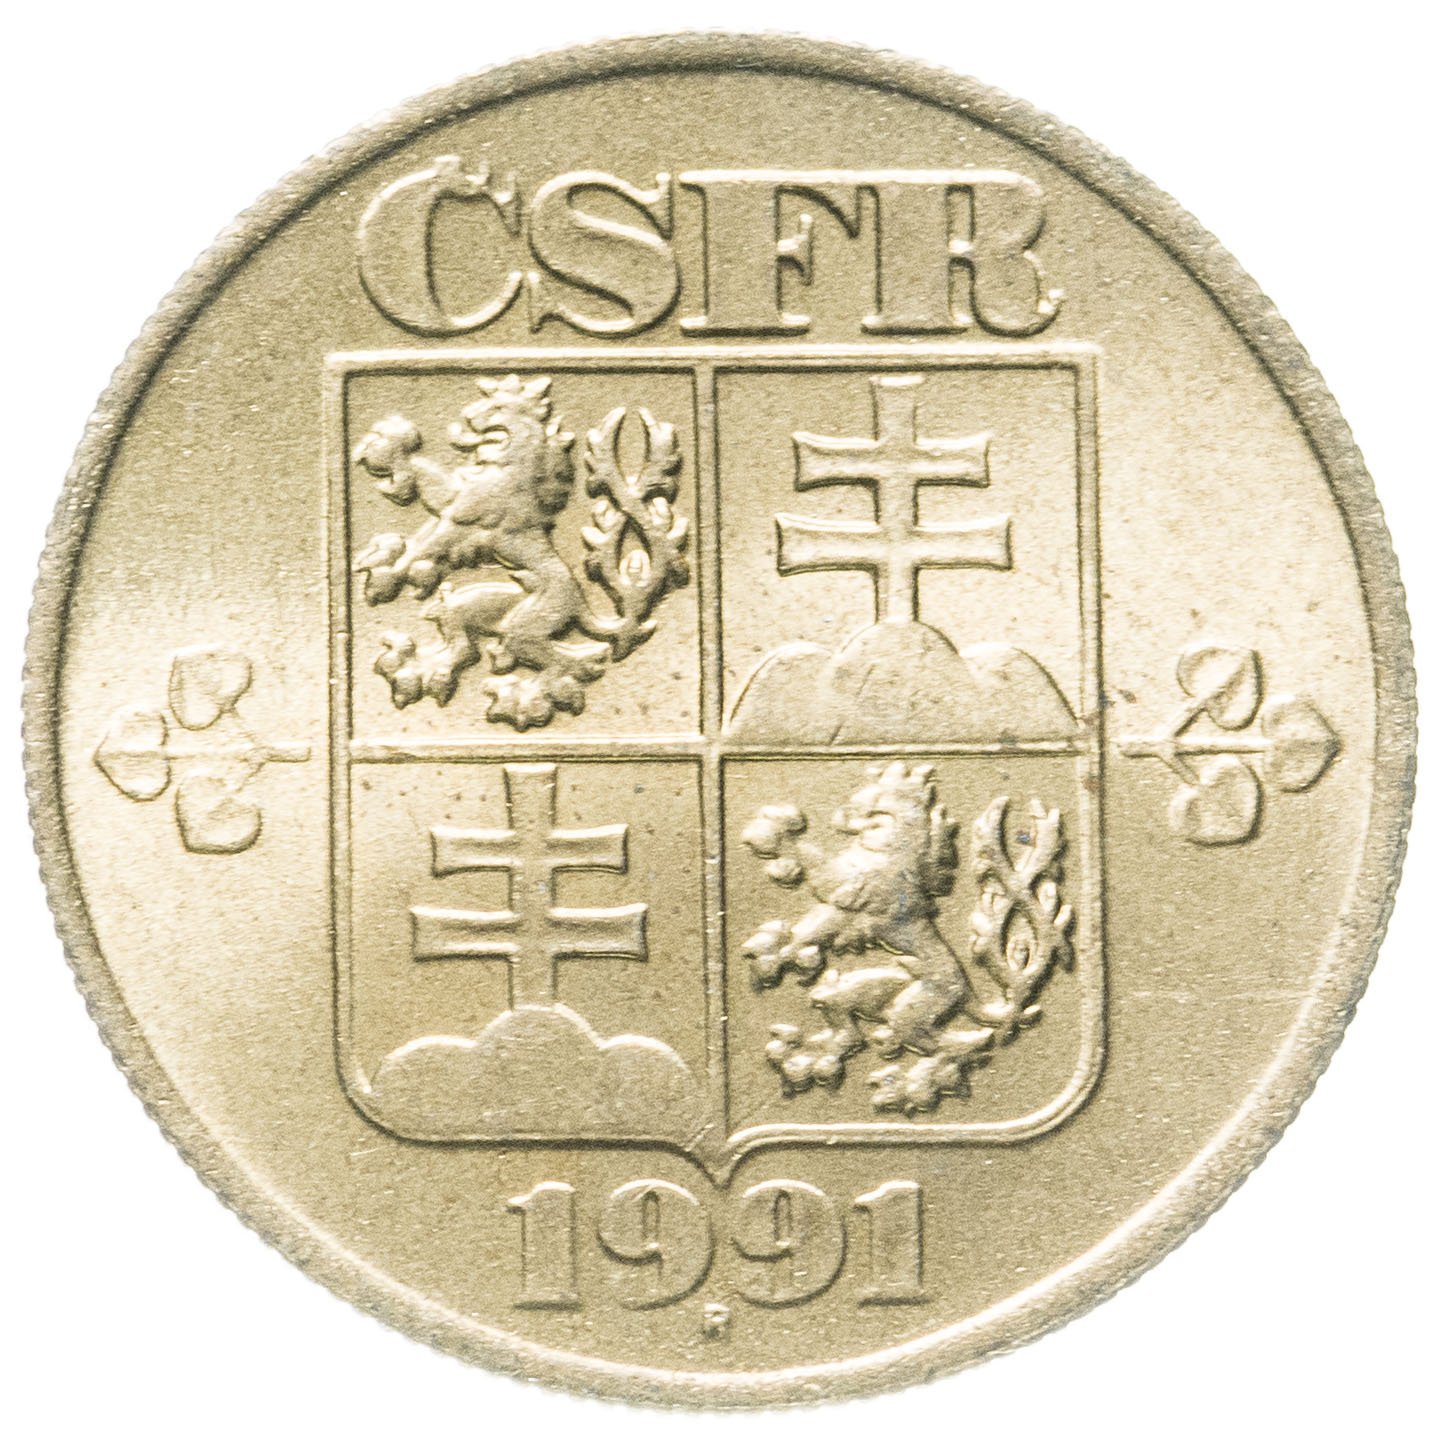 Чехословакия 20. Чехословакия - 1 Геллер 1955. Чехословакия 1 Геллер 1953. Чехословакия 5 геллеров 1991. Монета 10 геллеров 1800-1900.